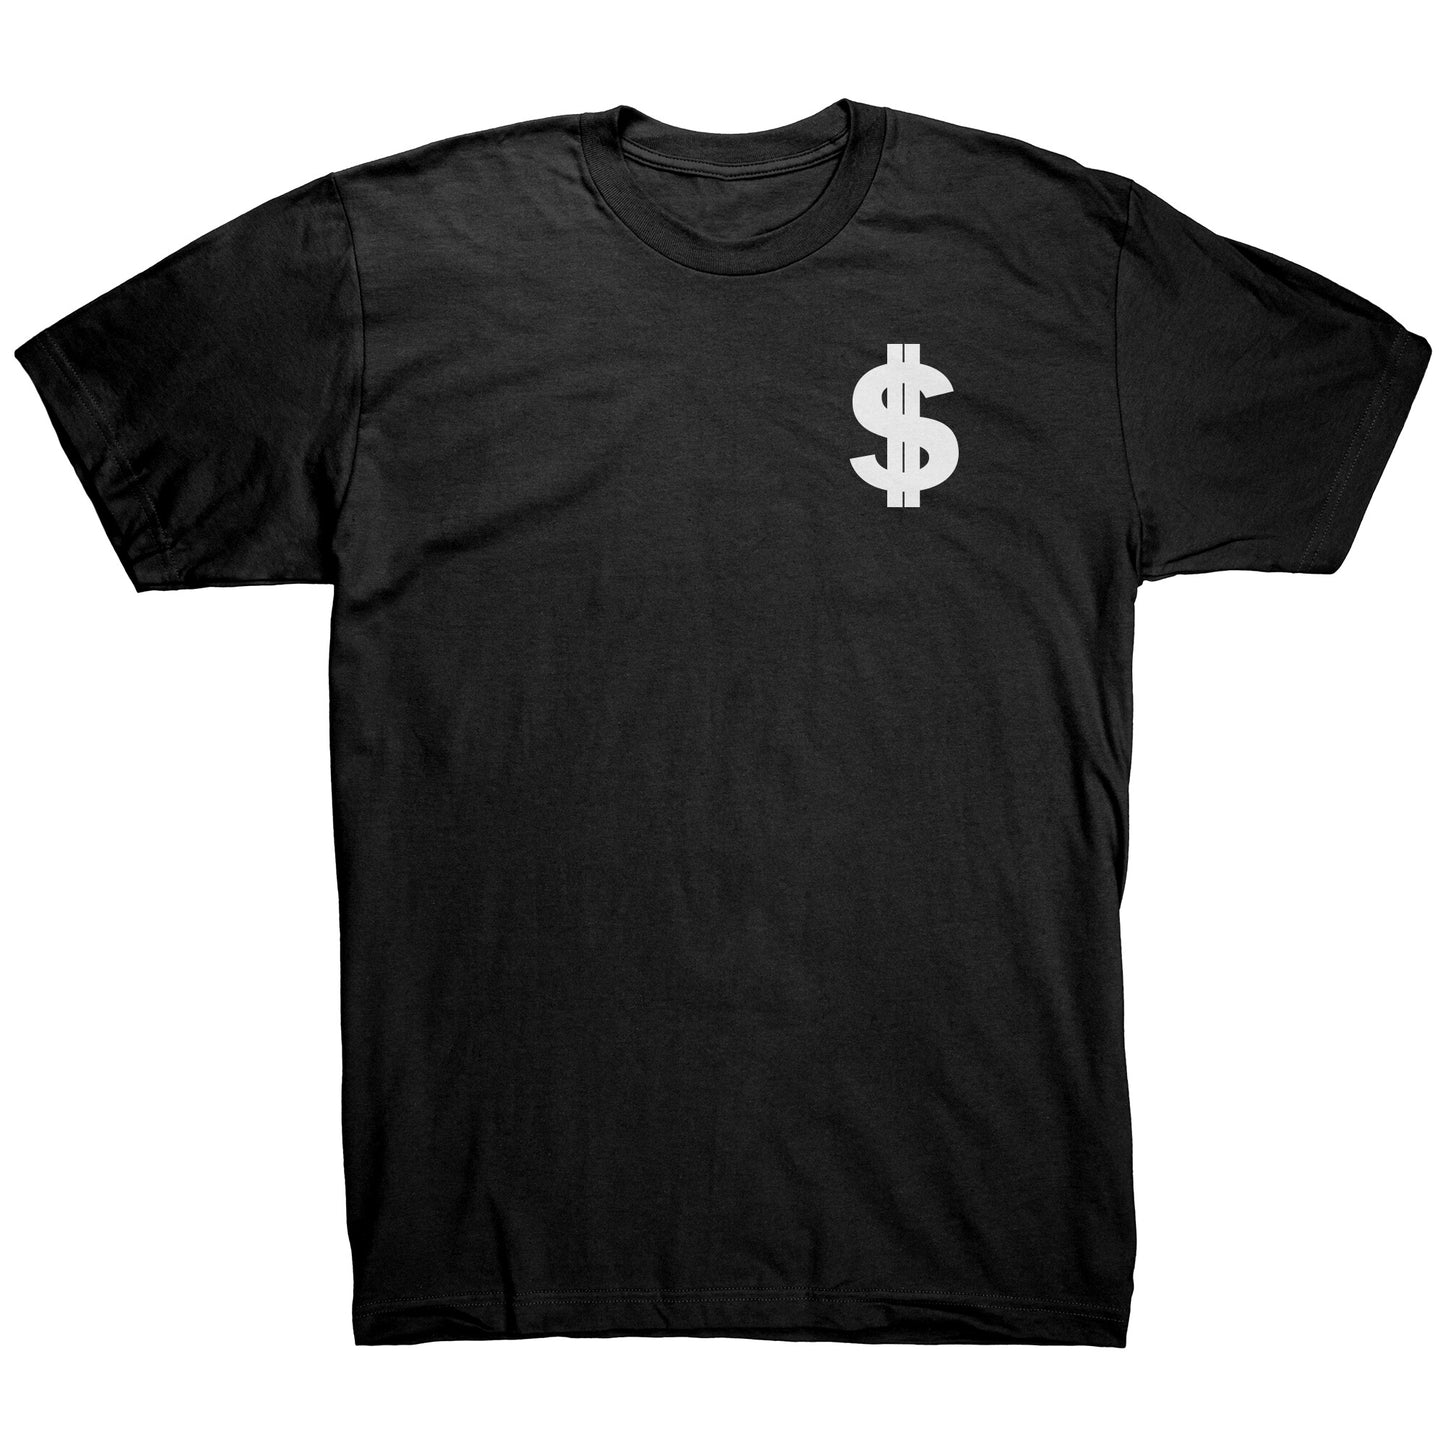 Money $$$ T-Shirt